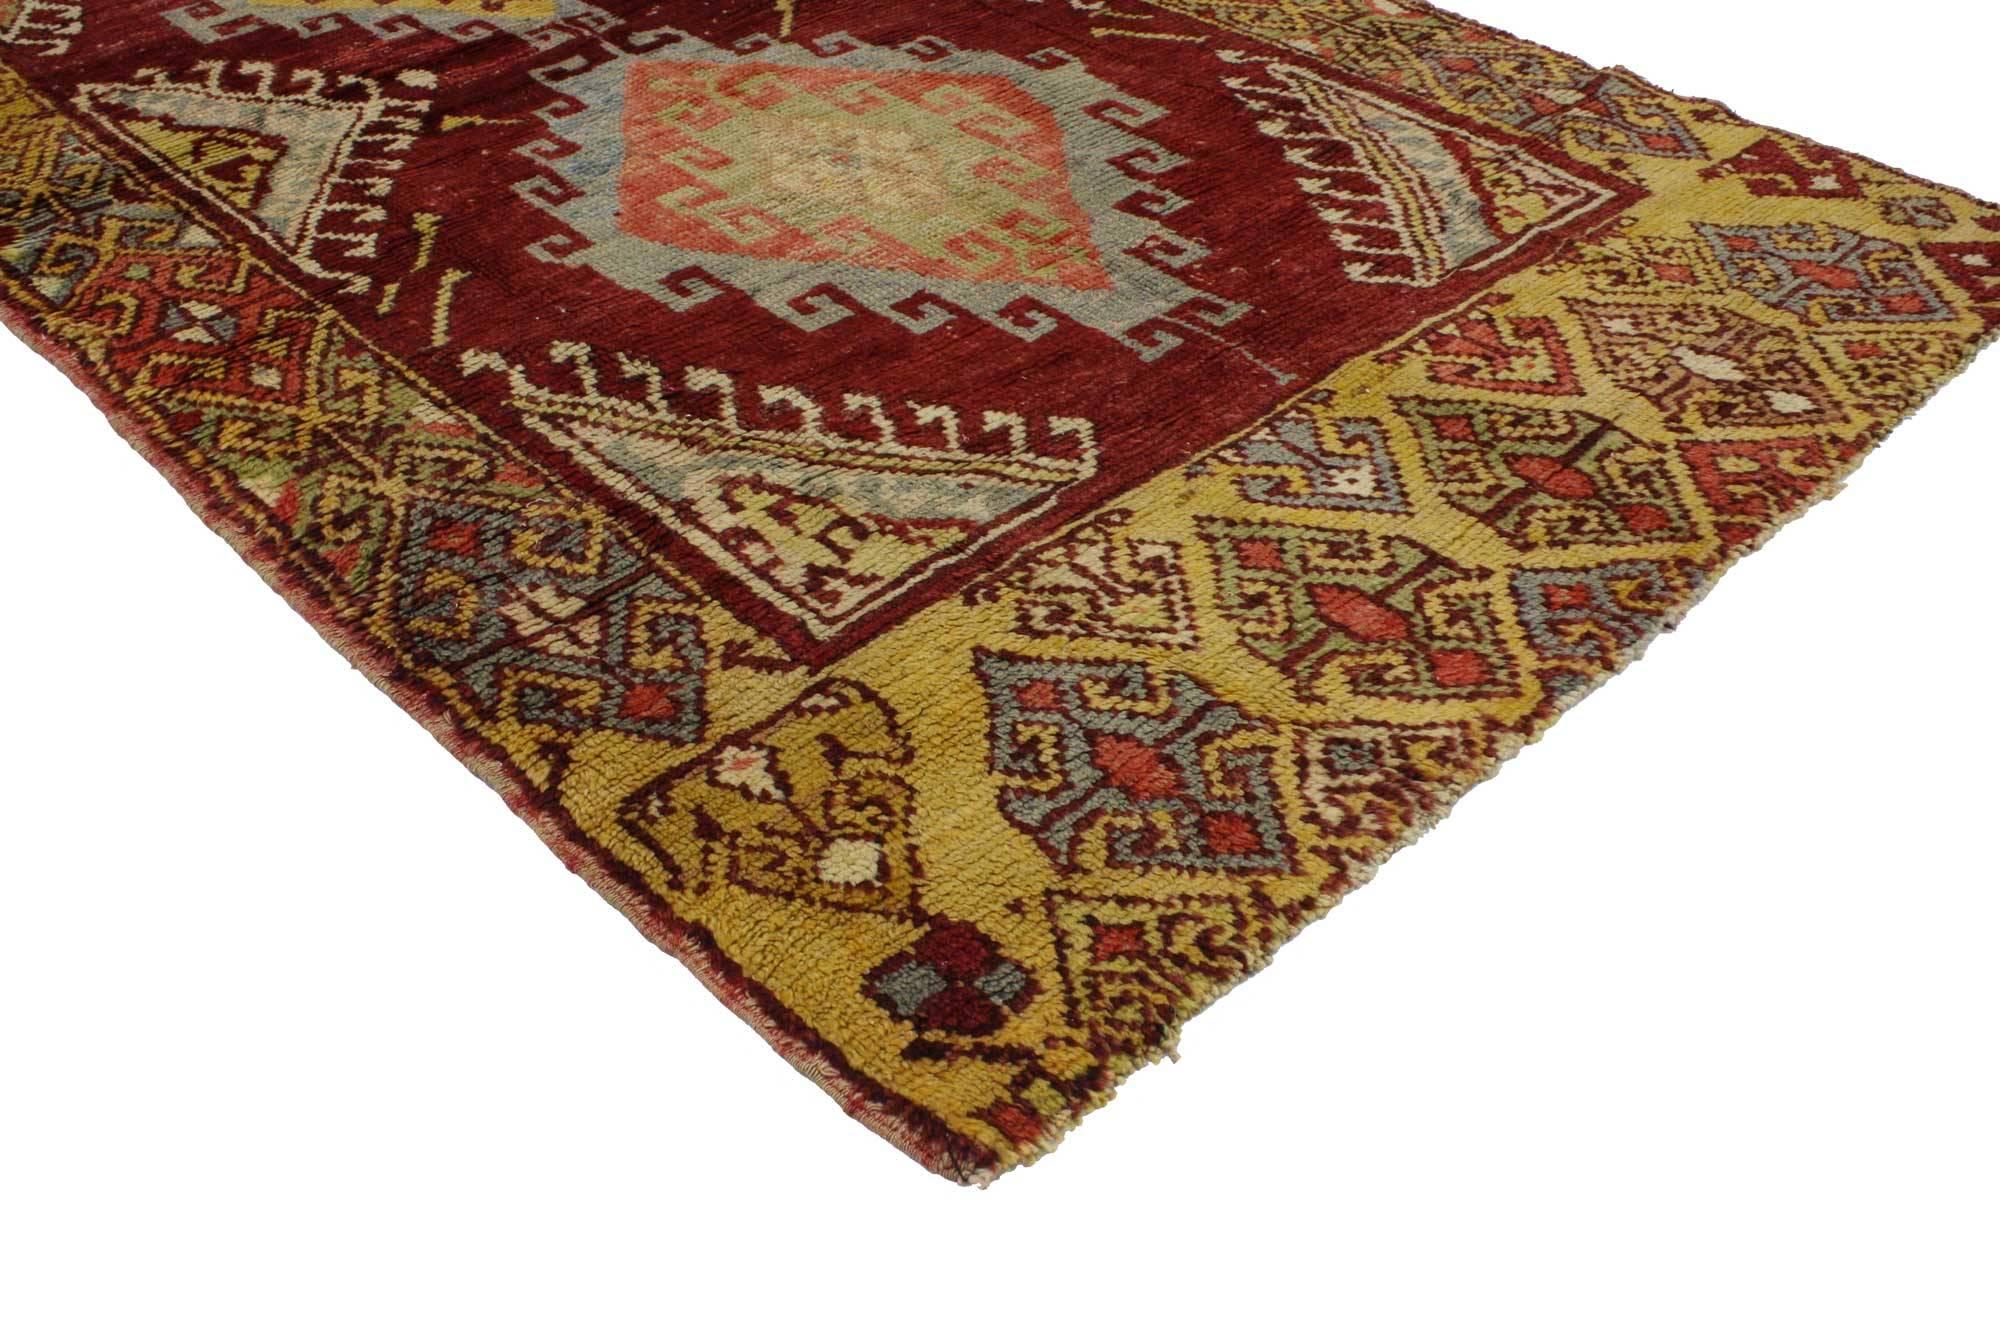 51731, tapis d'accentuation turc vintage Oushak, tapis d'entrée ou de foyer. Ce tapis turc Oushak vintage présente un style moderne et traditionnel. Imprégné de l'histoire de l'Anatolie et de couleurs raffinées, ce tapis Oushak vintage allie